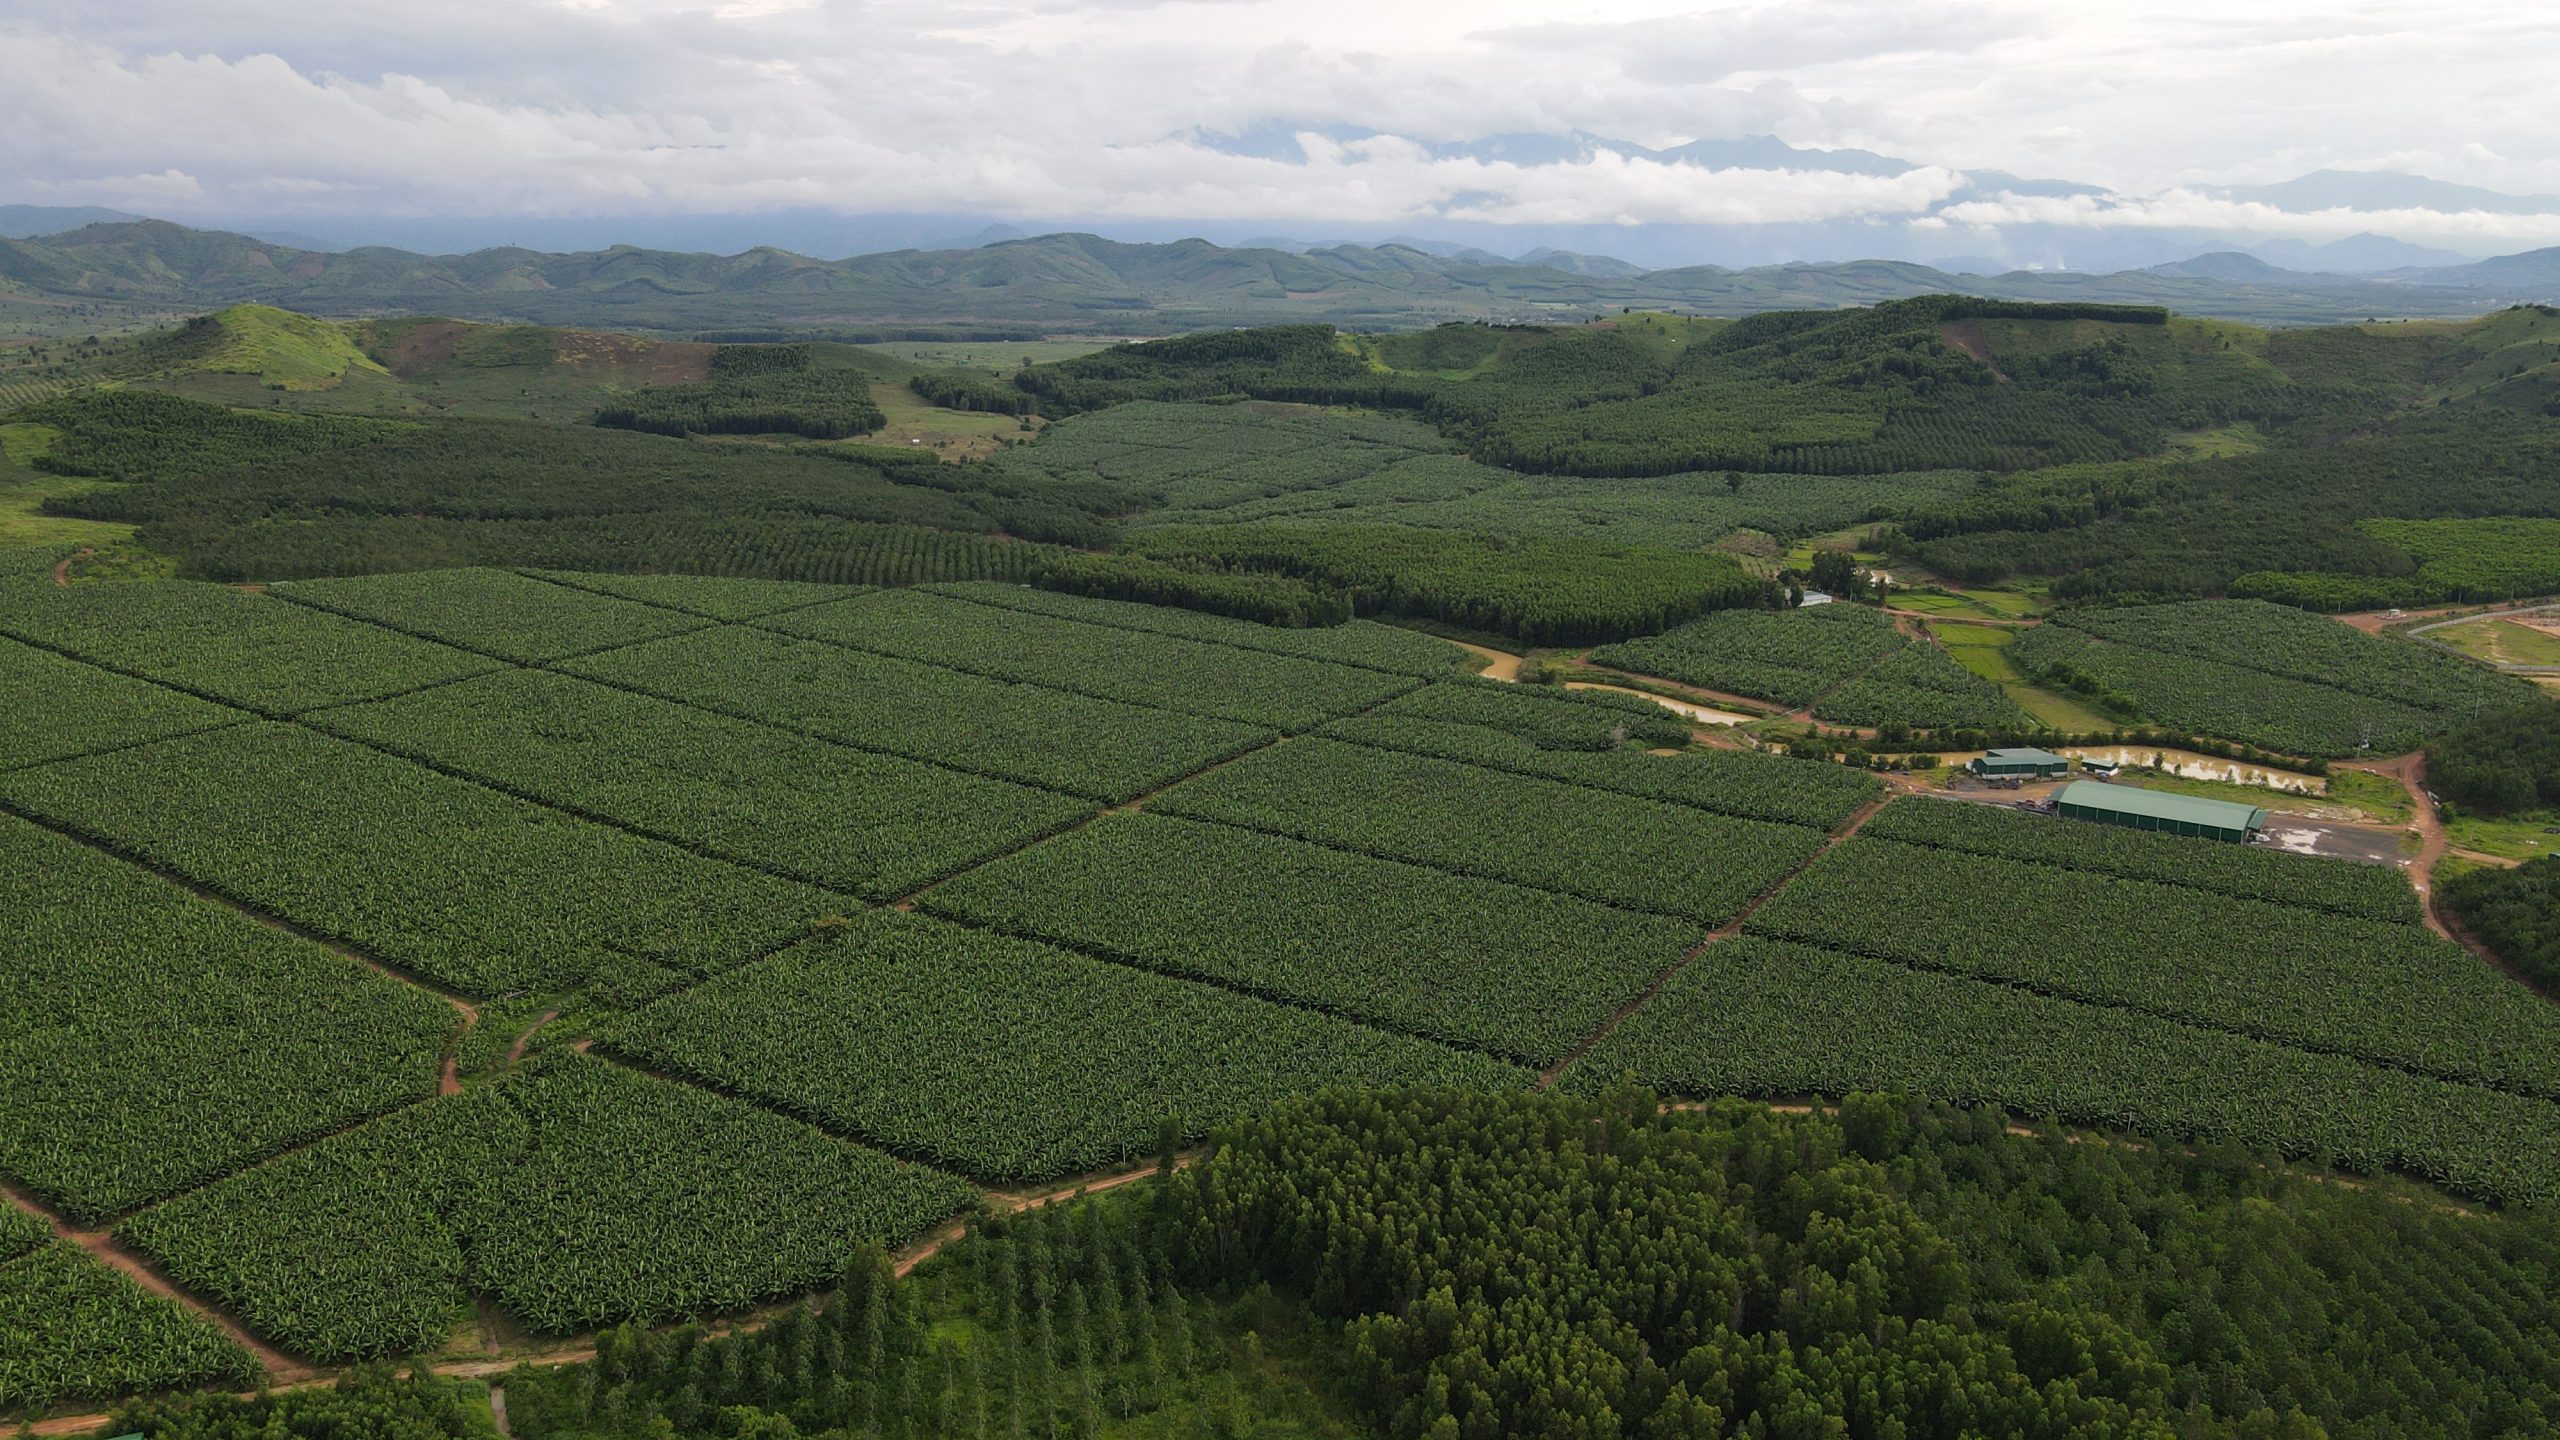 Dự án liên hợp nông nghiệp công nghệ cao Phước An ở huyện Krông Pắc, tỉnh Đắk Lắk.